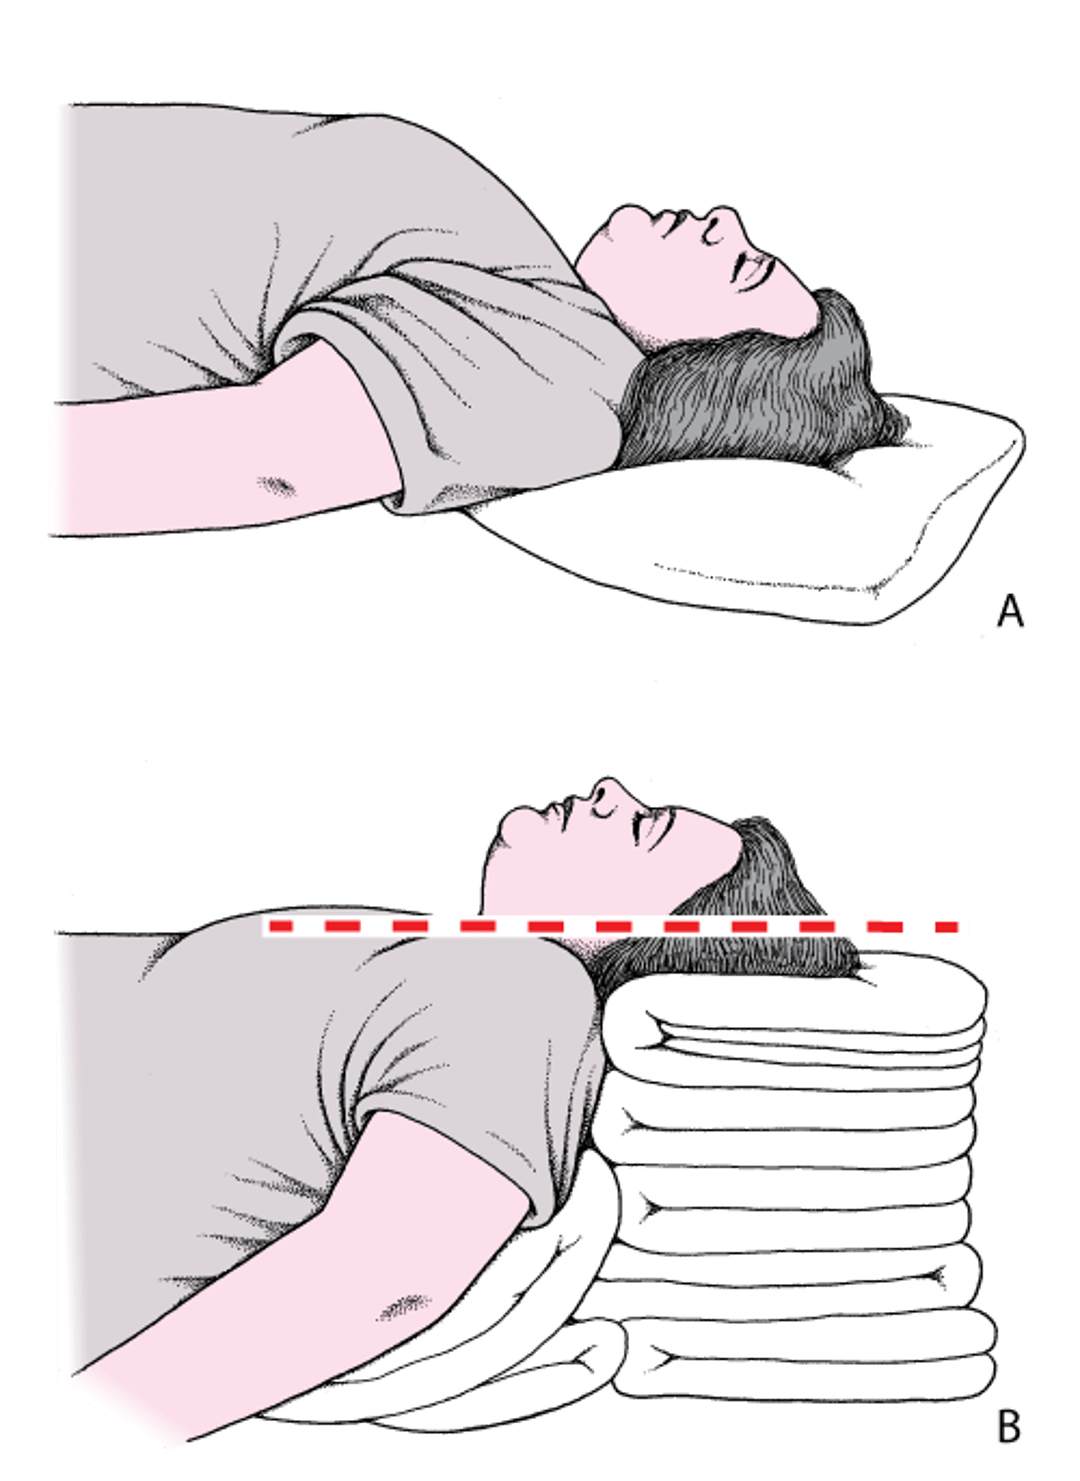 Positionierung von Kopf und Hals zur Öffnung der Atemwege: "Schnüffelposition"